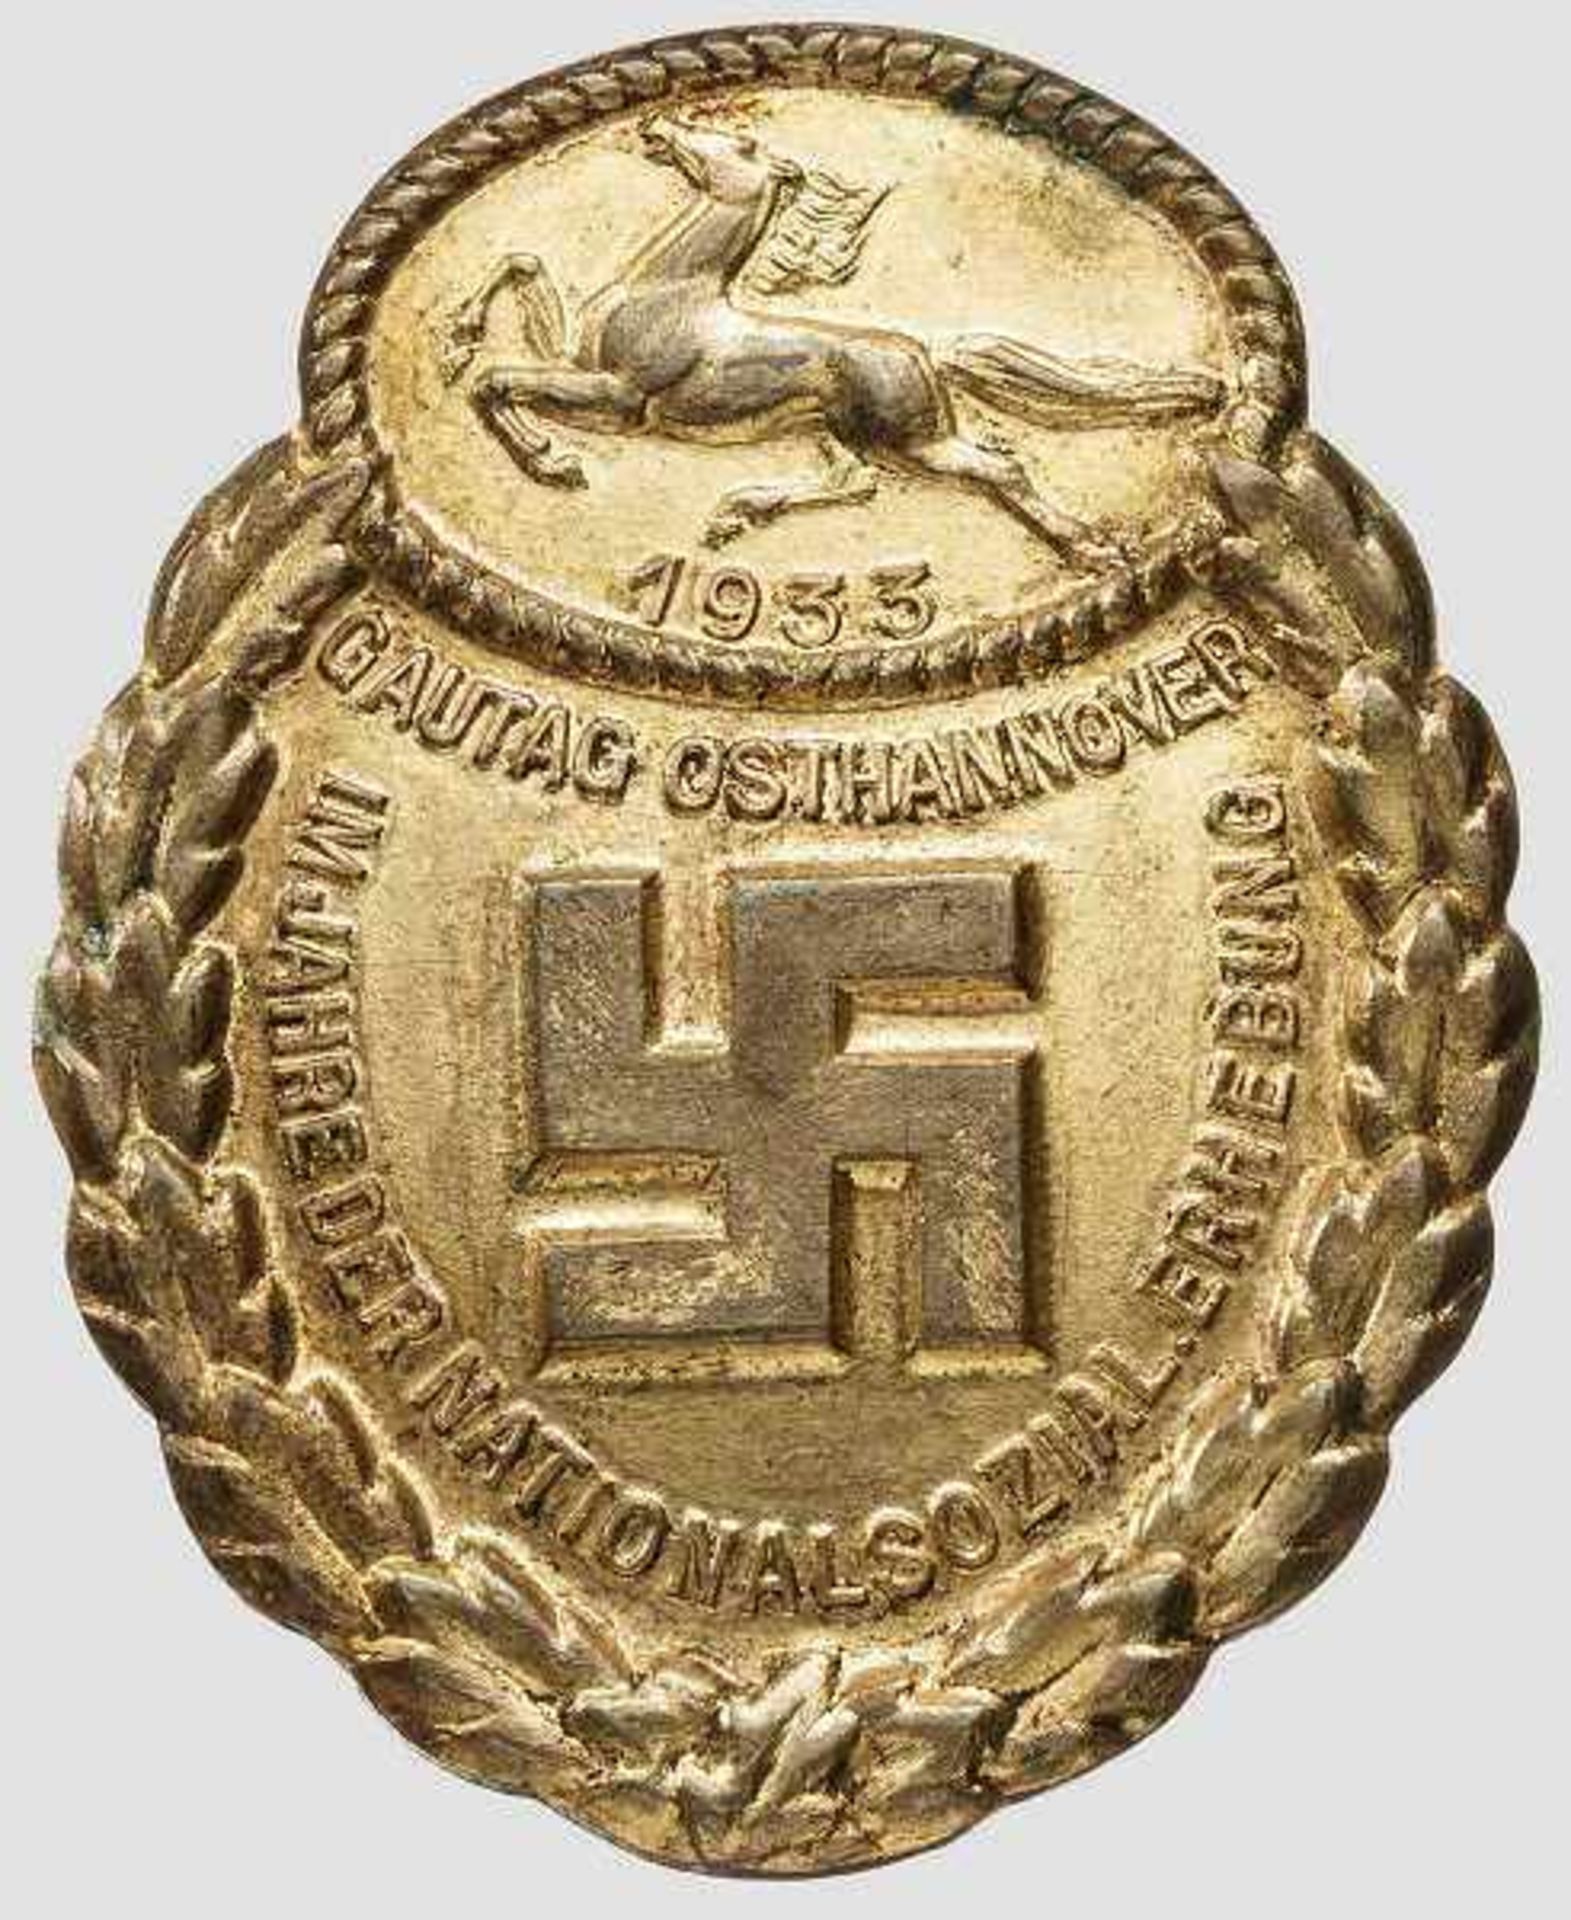 Ehrenzeichen der NSDAP - Gau-Osthannover Massiv in Bronze geprägtes, vergoldetes Abzeichen mit